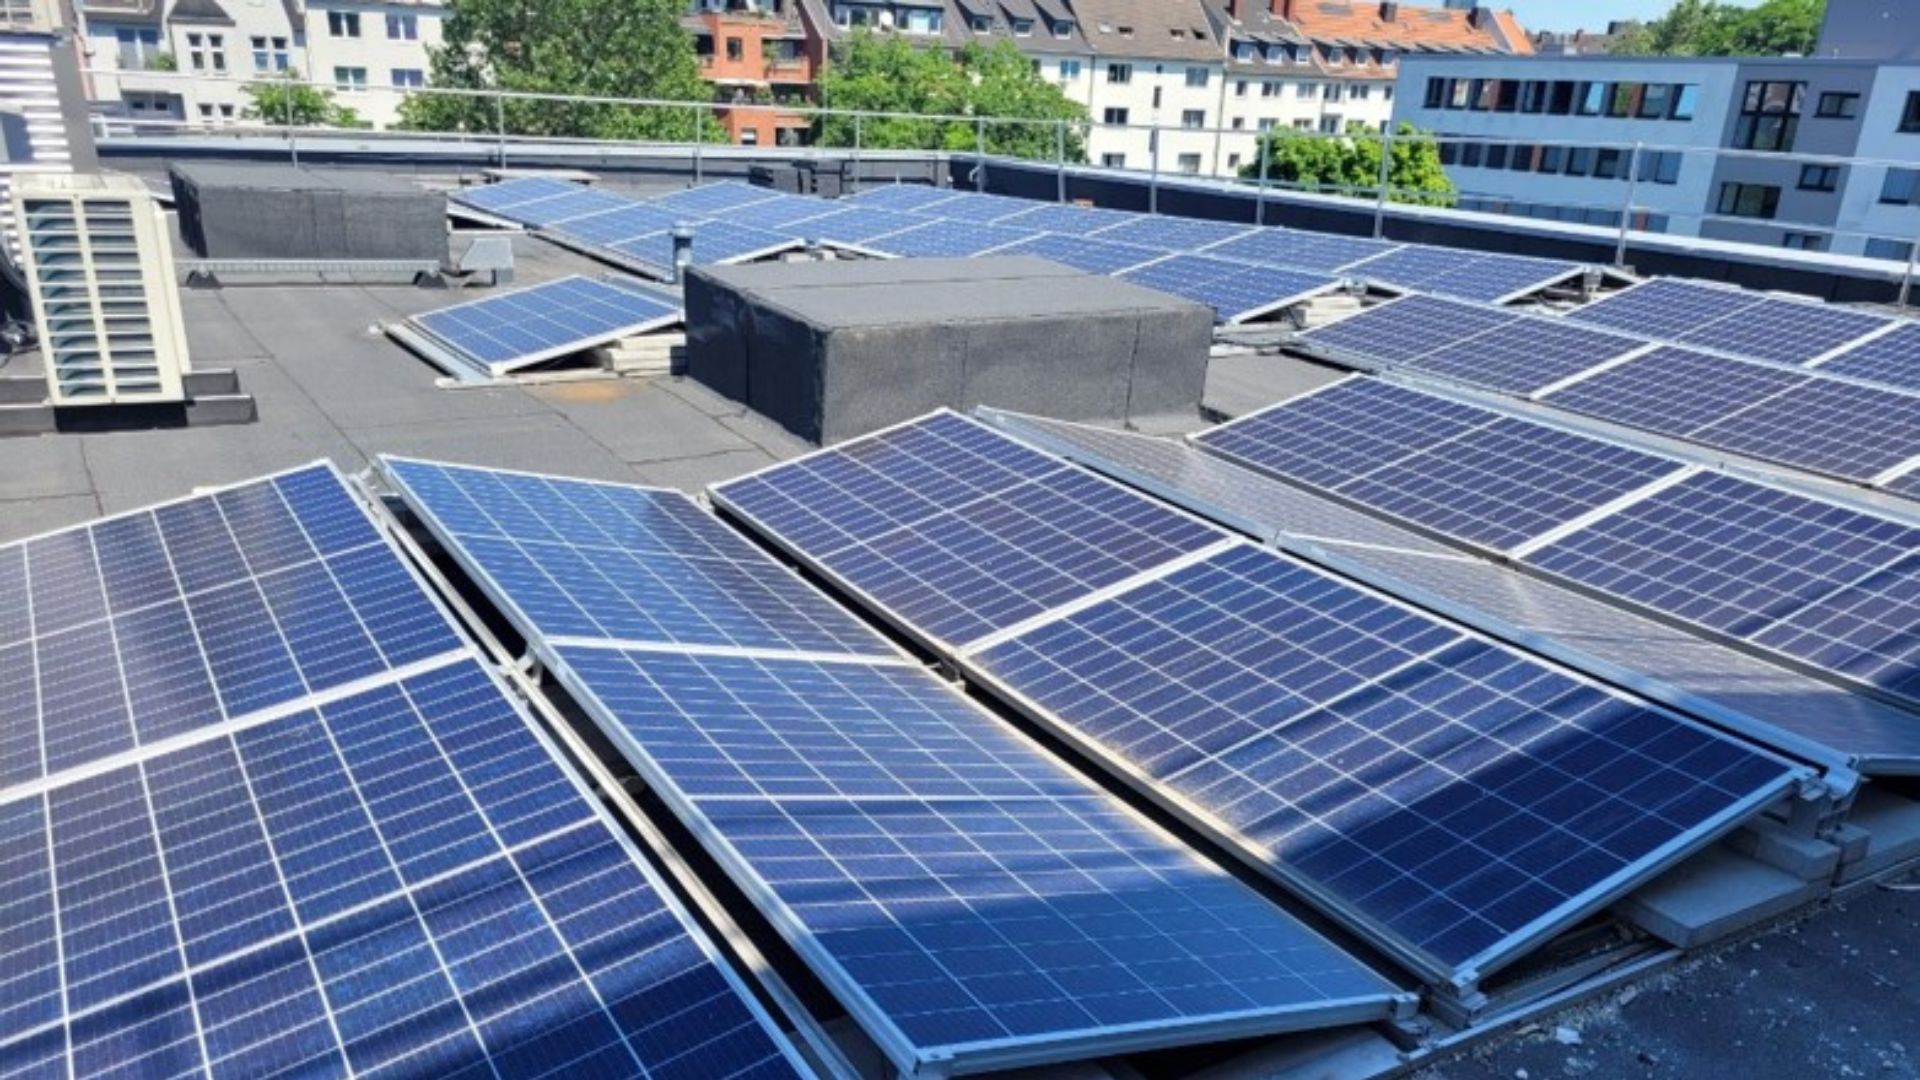 Auf dem Dach eines Krankenhauses ist eine große Photovoltaikanlage aufgebaut, im Hintergrund sieht man die Dächer der benachbarten Häuser.